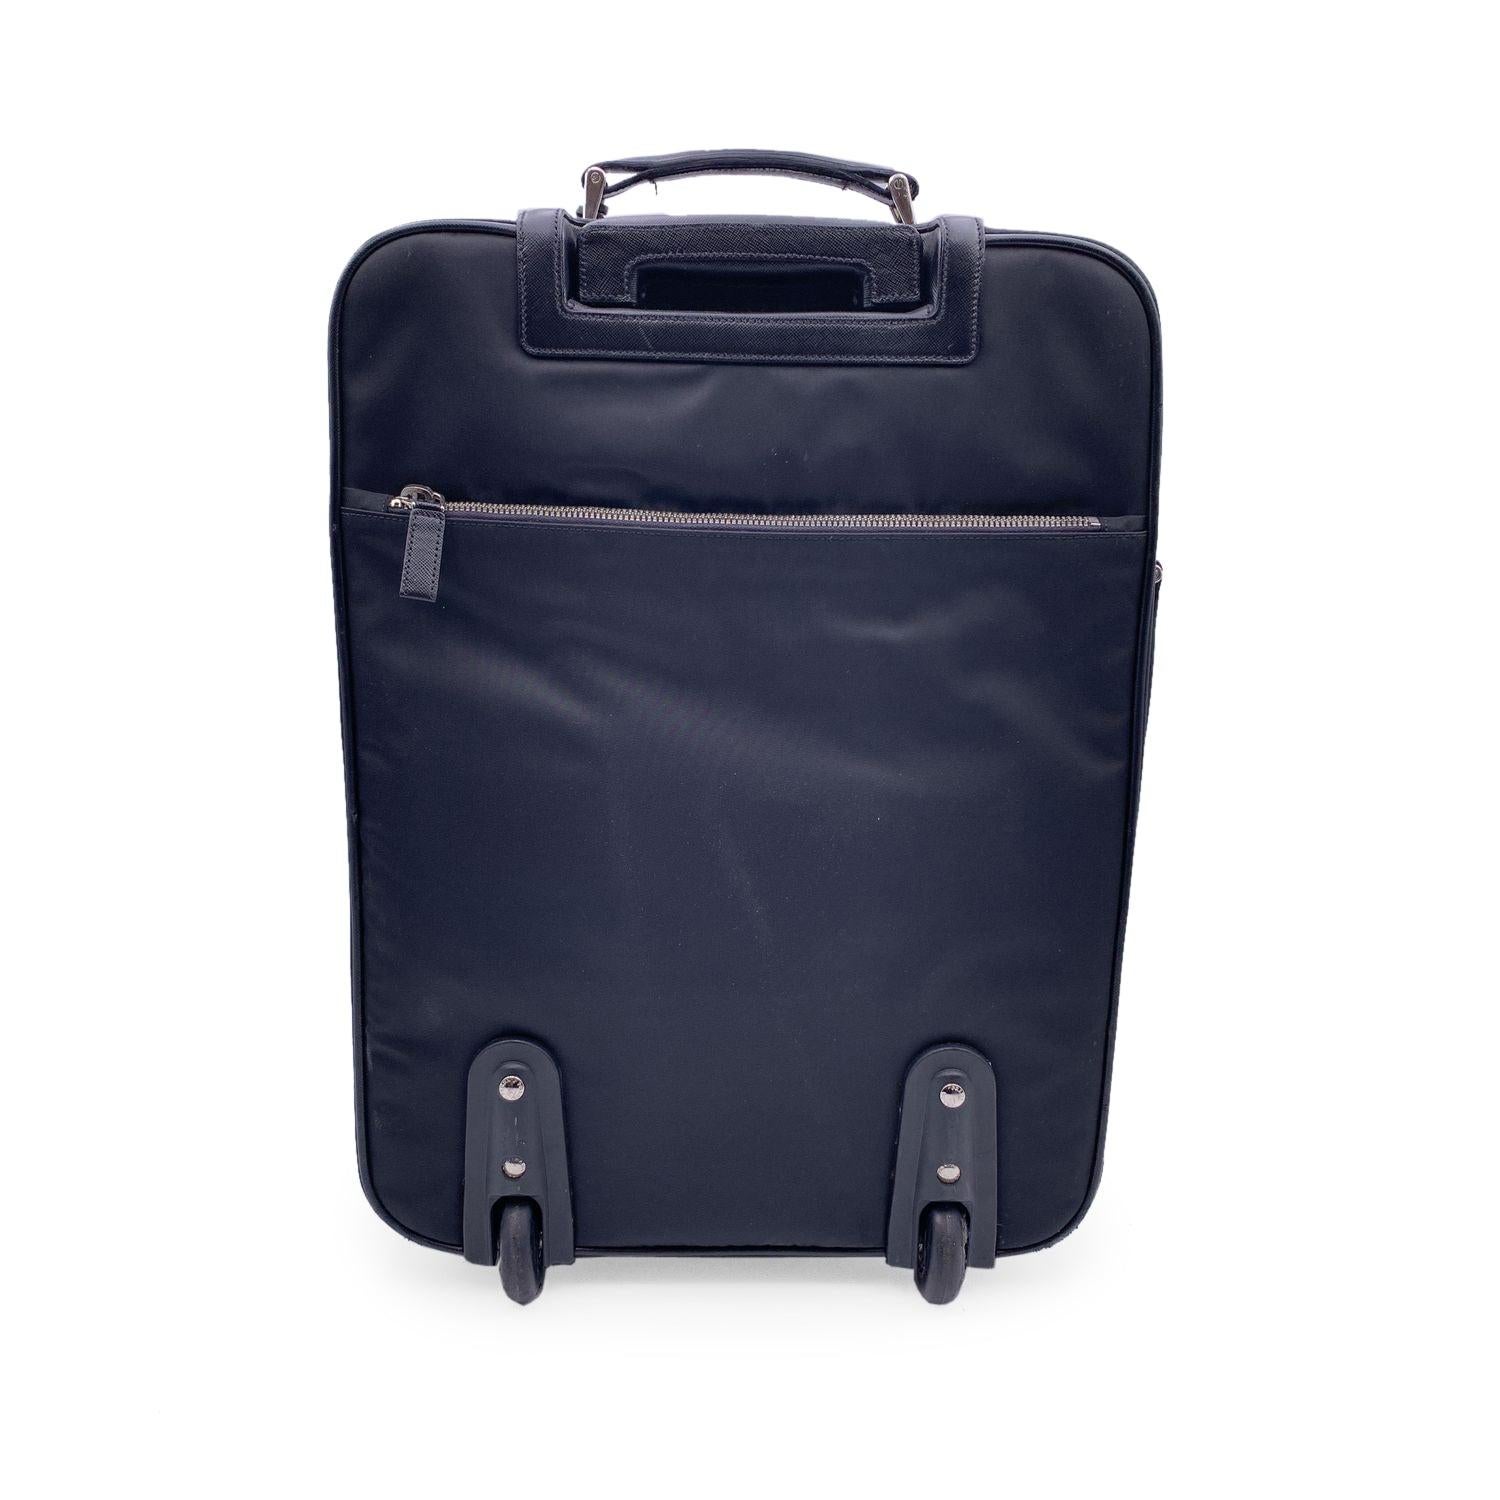 Prada Black Nylon Rolling Suitcase Trolley Luggage Travel Bag Excellent état à Rome, Rome